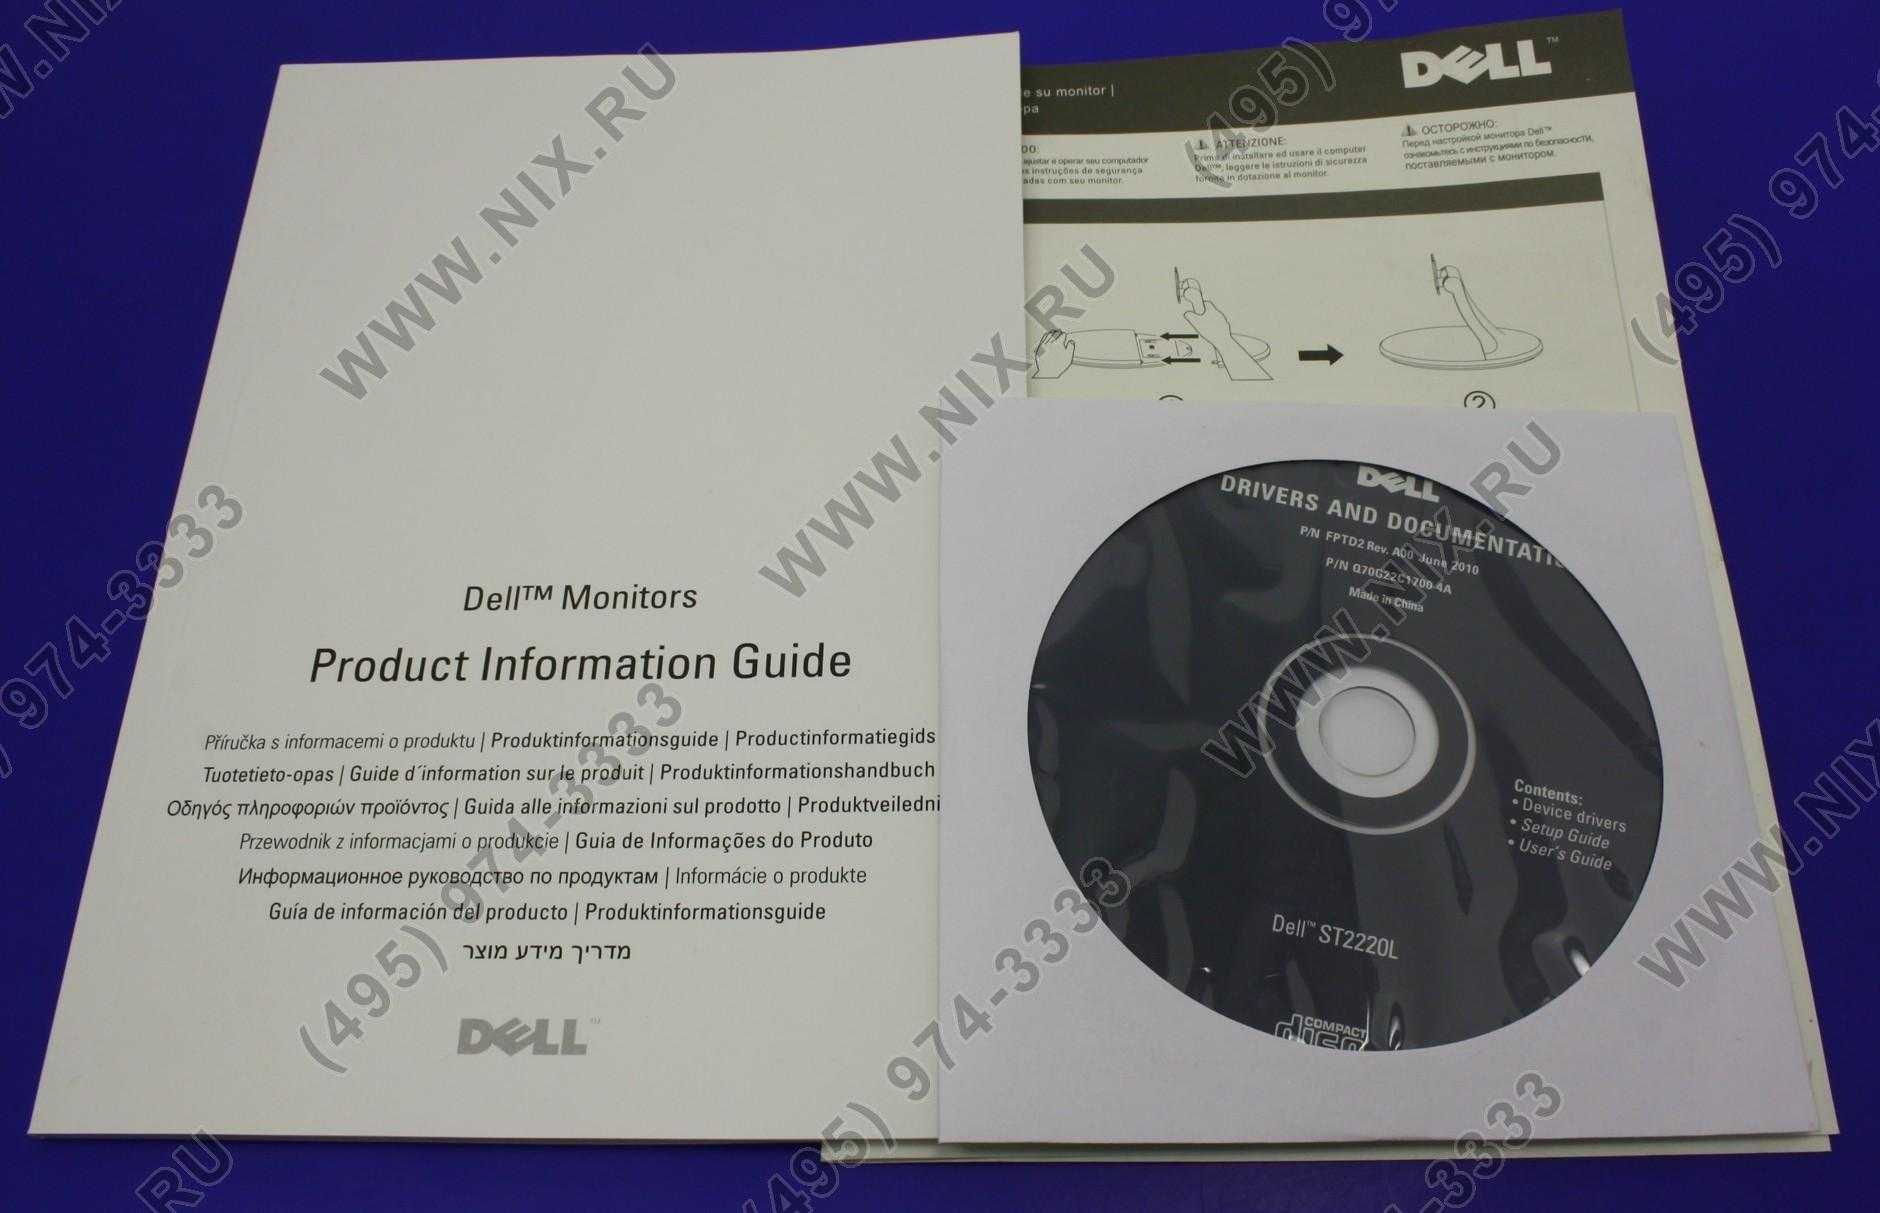 Жк монитор 24" dell st2420l — купить, цена и характеристики, отзывы